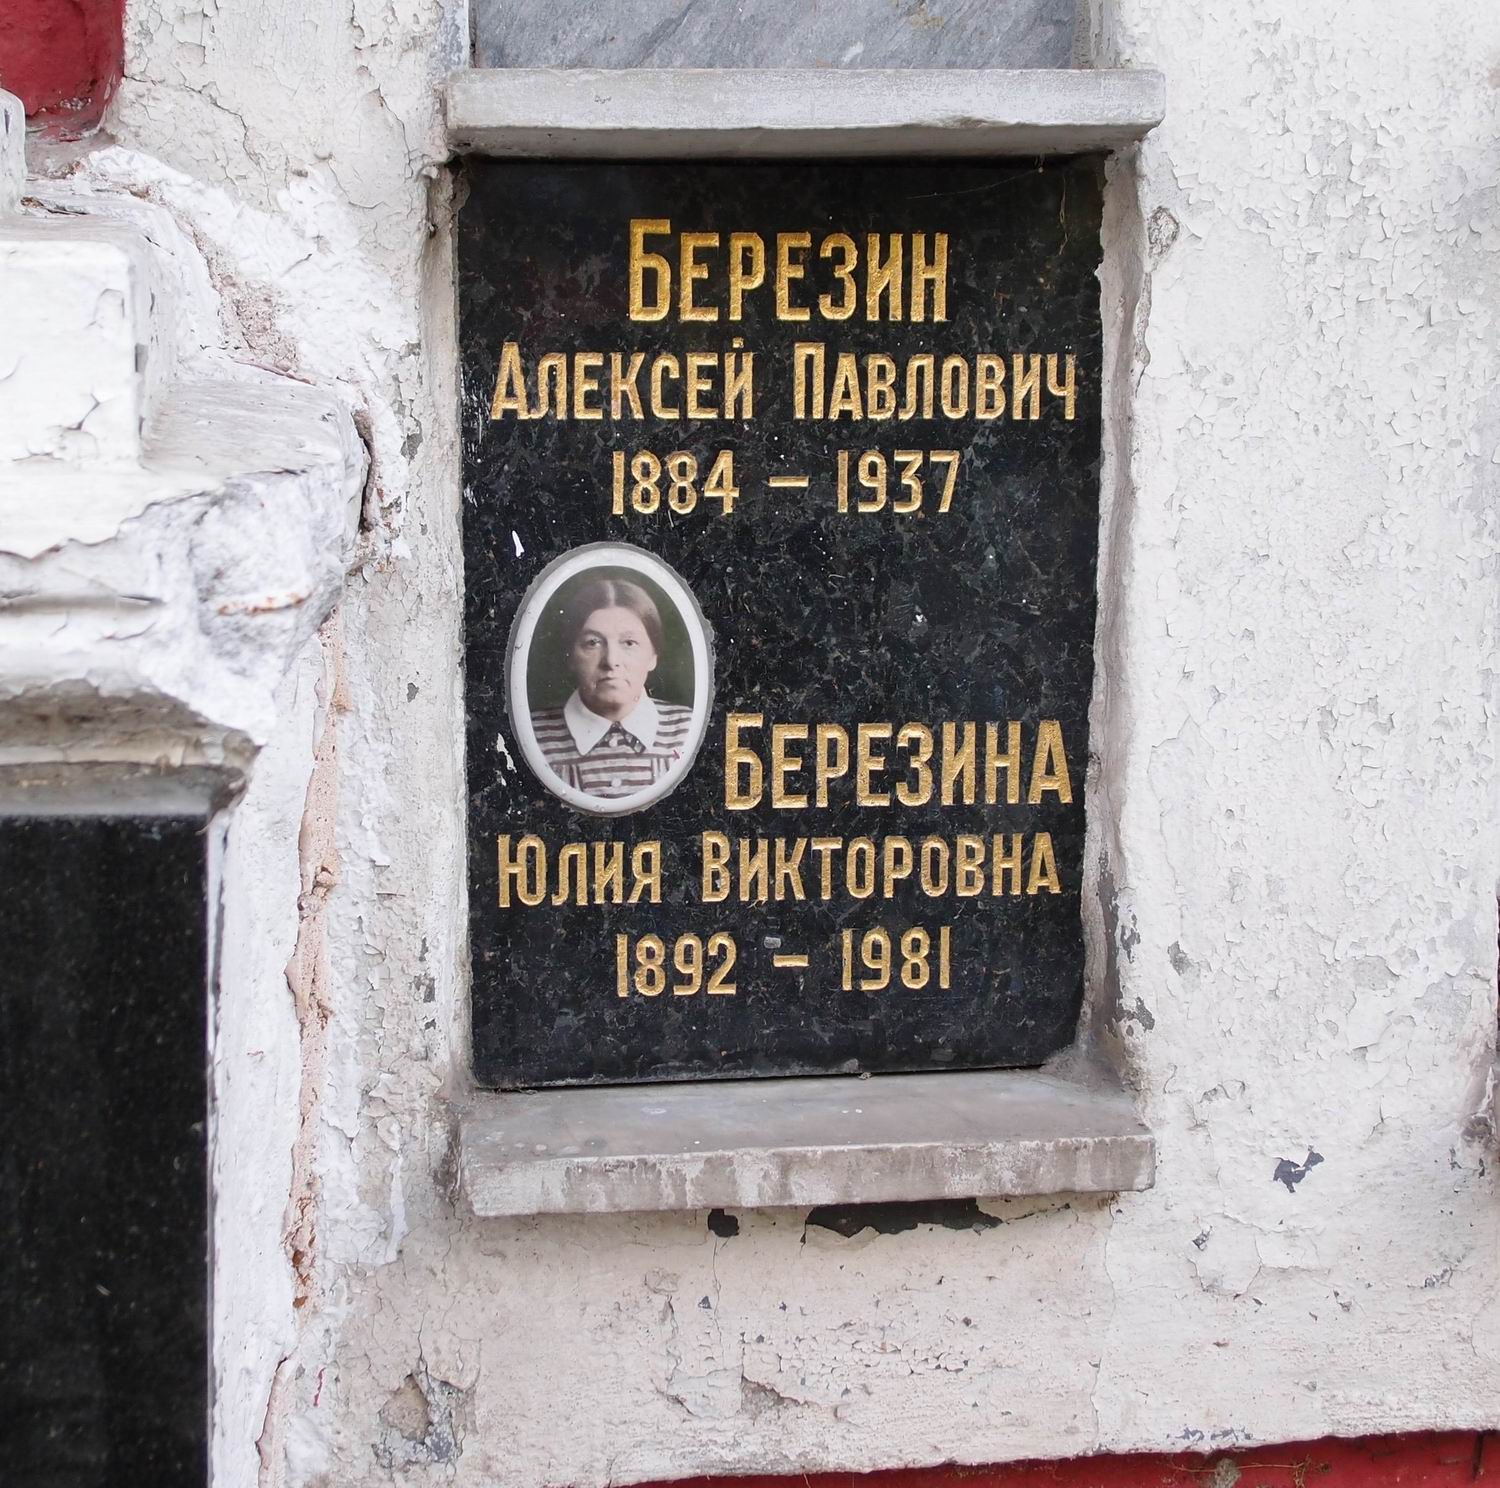 Плита на нише Березина А.П. (1884-1937), на Новодевичьем кладбище (колумбарий [43]-1-4).